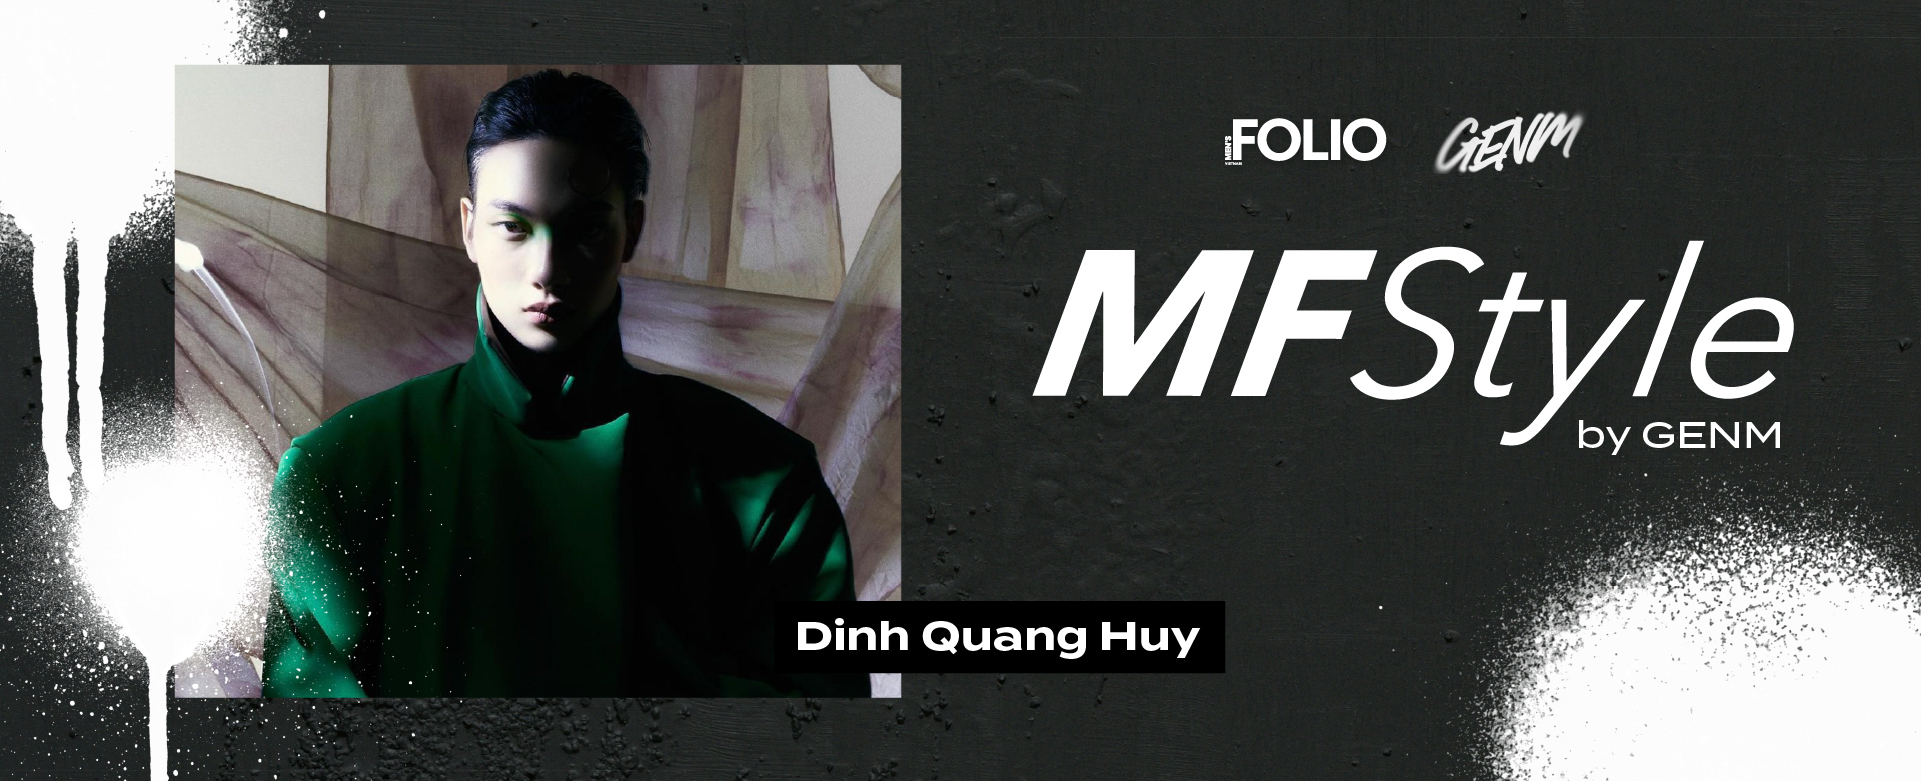 MF STYLE: Đinh Quang Huy và sự đơn giản tạo nên phong cách